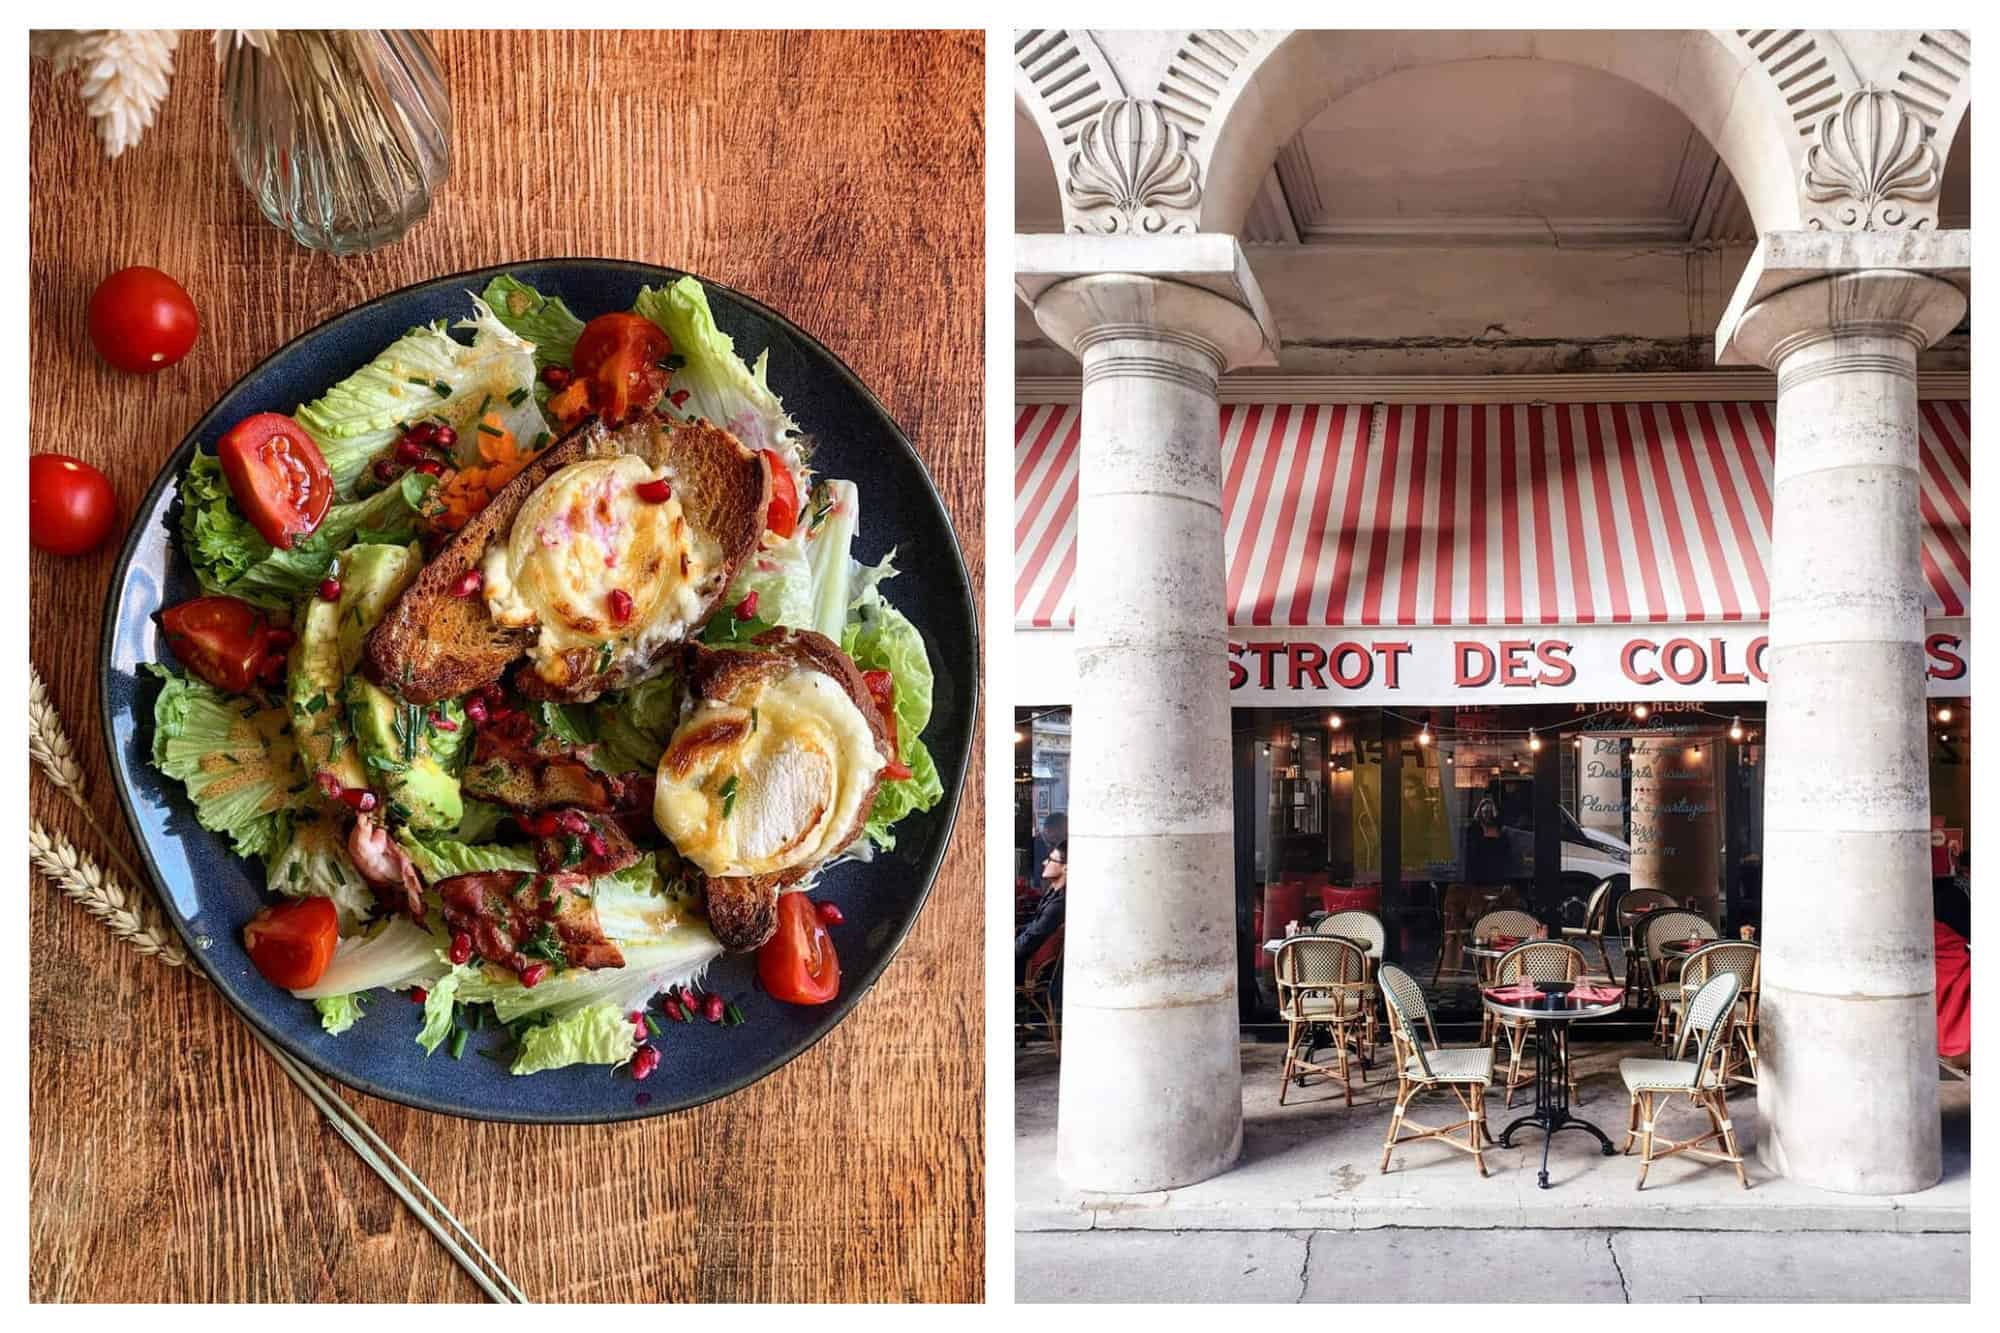 Left: A chèvre chaud salad. Right: An empty terrace in Paris.